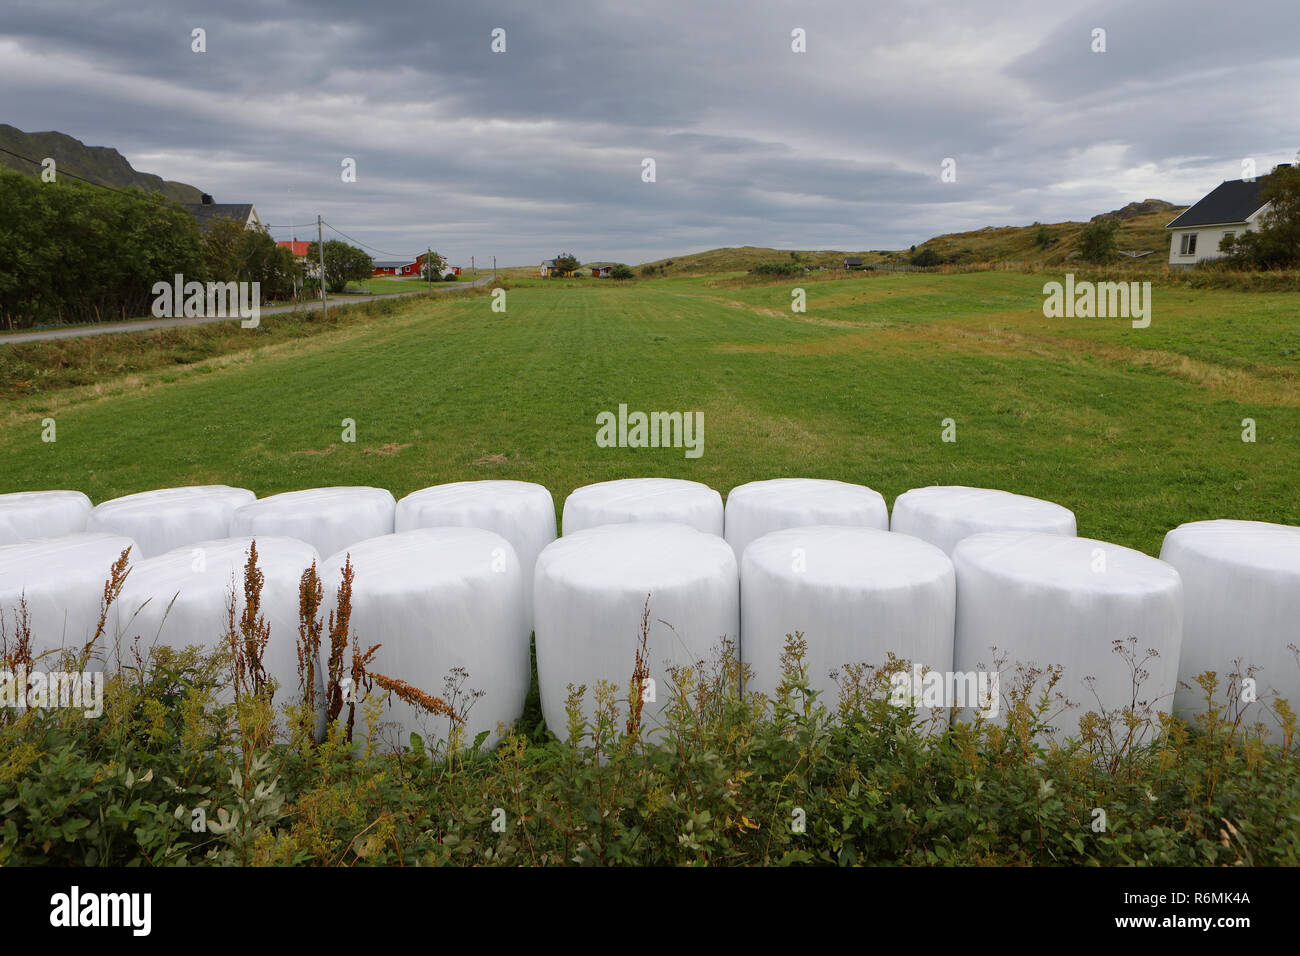 Balle di fieno imballato in bianco di plastica posti in due linee in primo piano e campo verde a sfondo. Villaggio delle Lofoten. Foto Stock